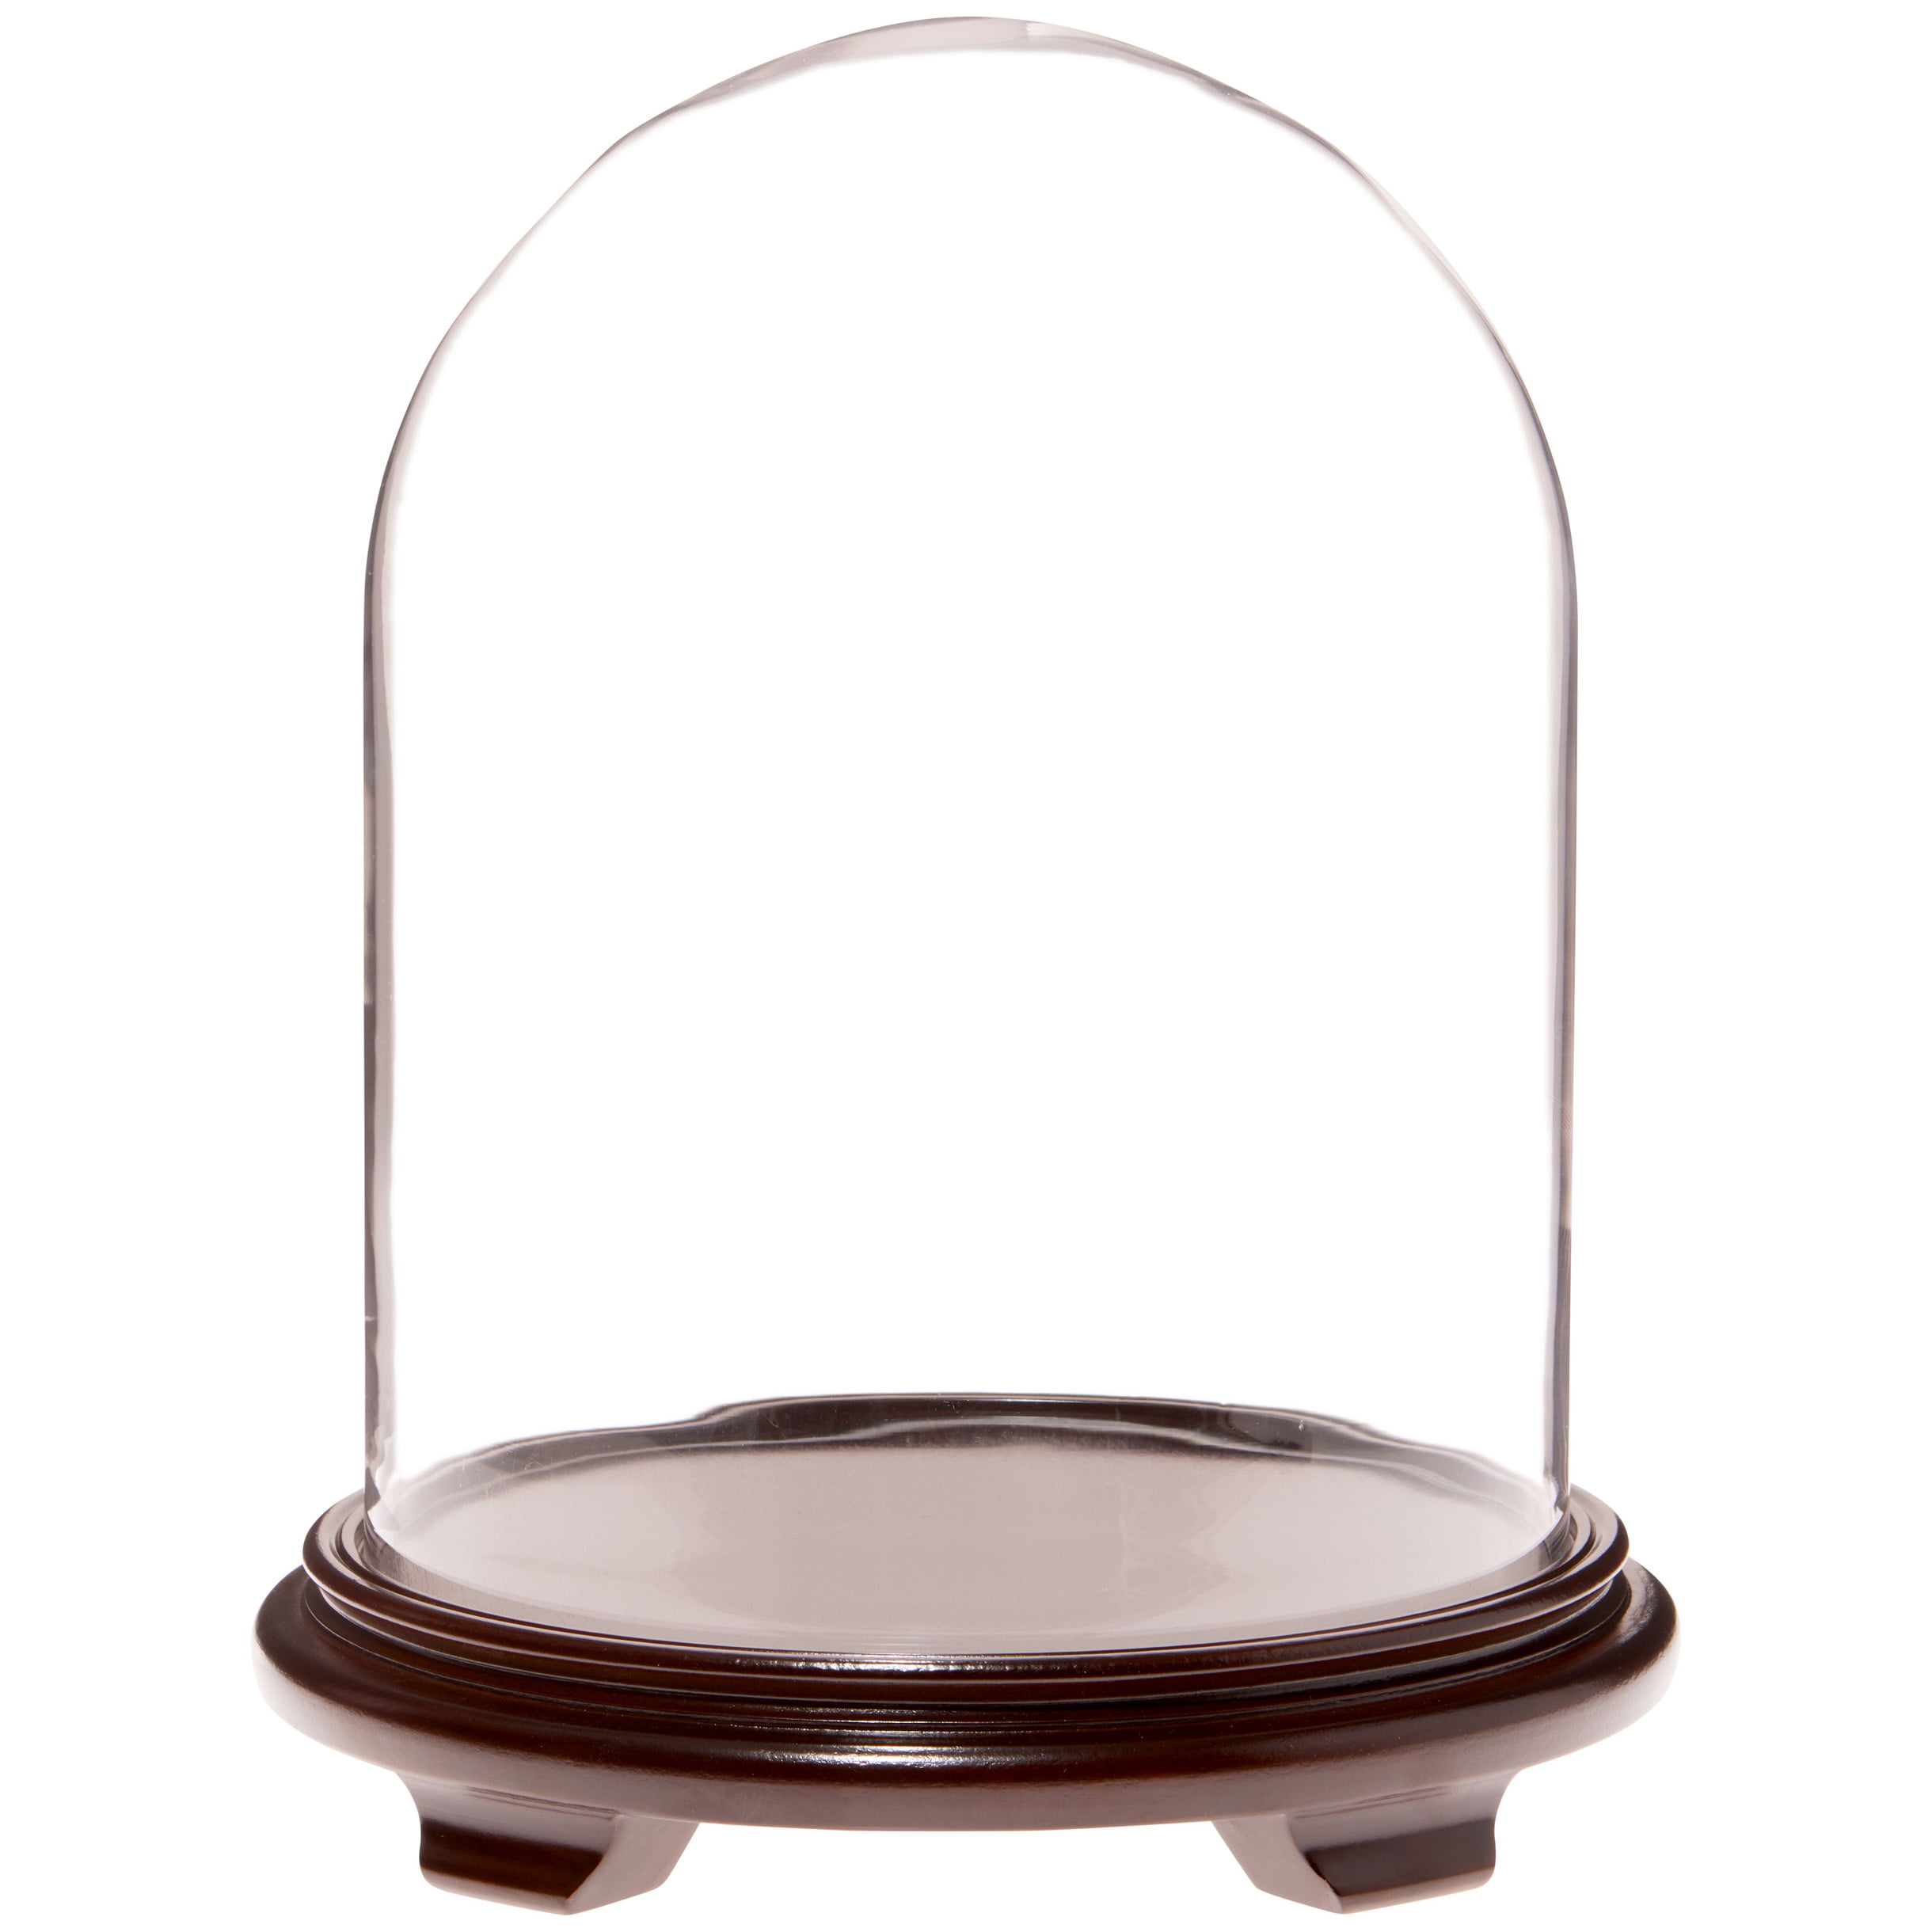 Plymor 11.75" x 15" Glass Display Dome Cloche Walnut Base 